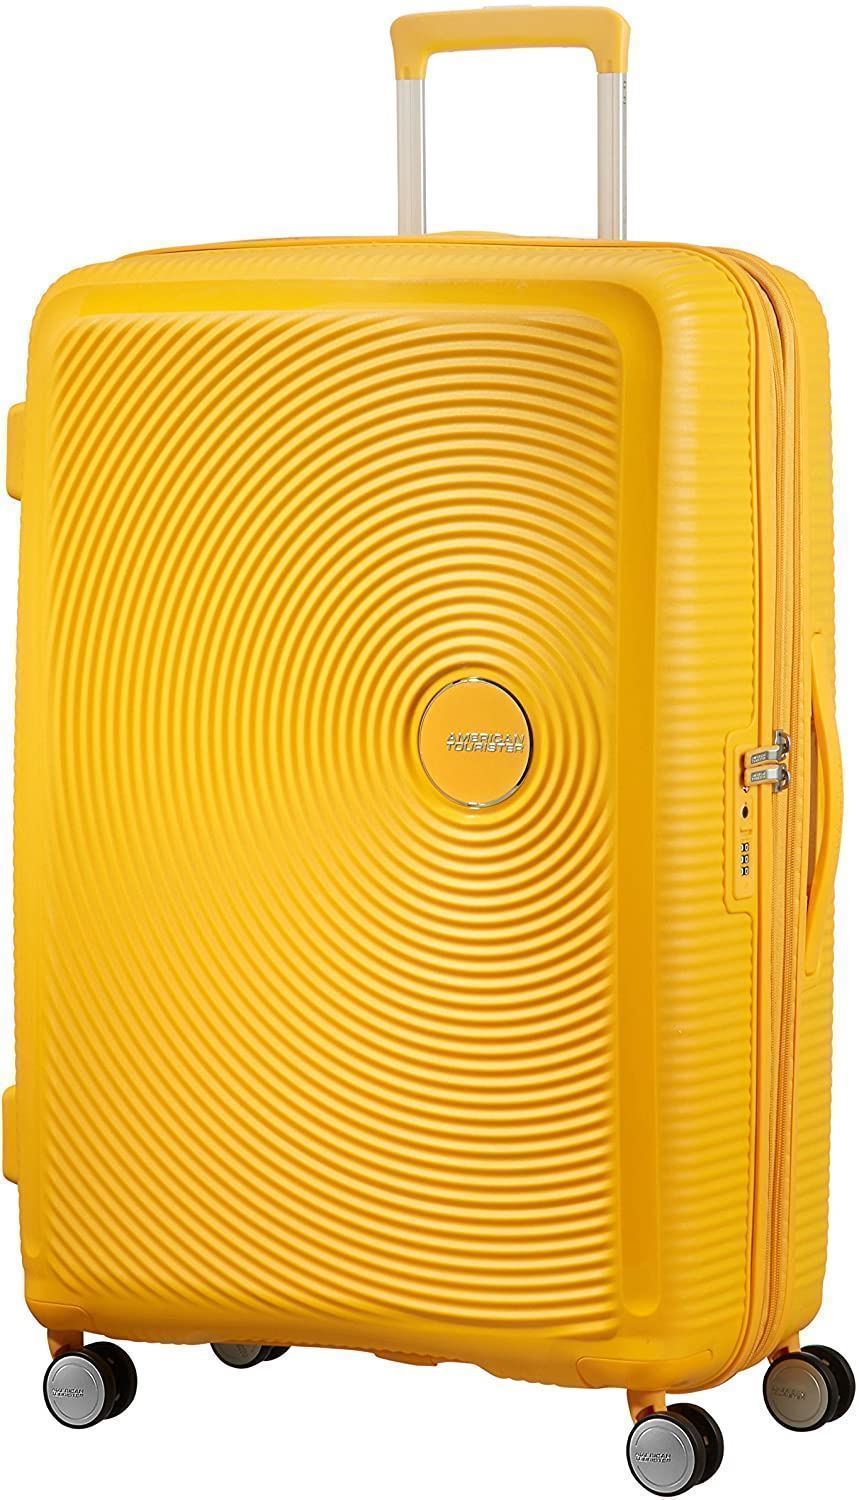 maleta american tourister soundbox grande expandible golden yellow - Imagen 2